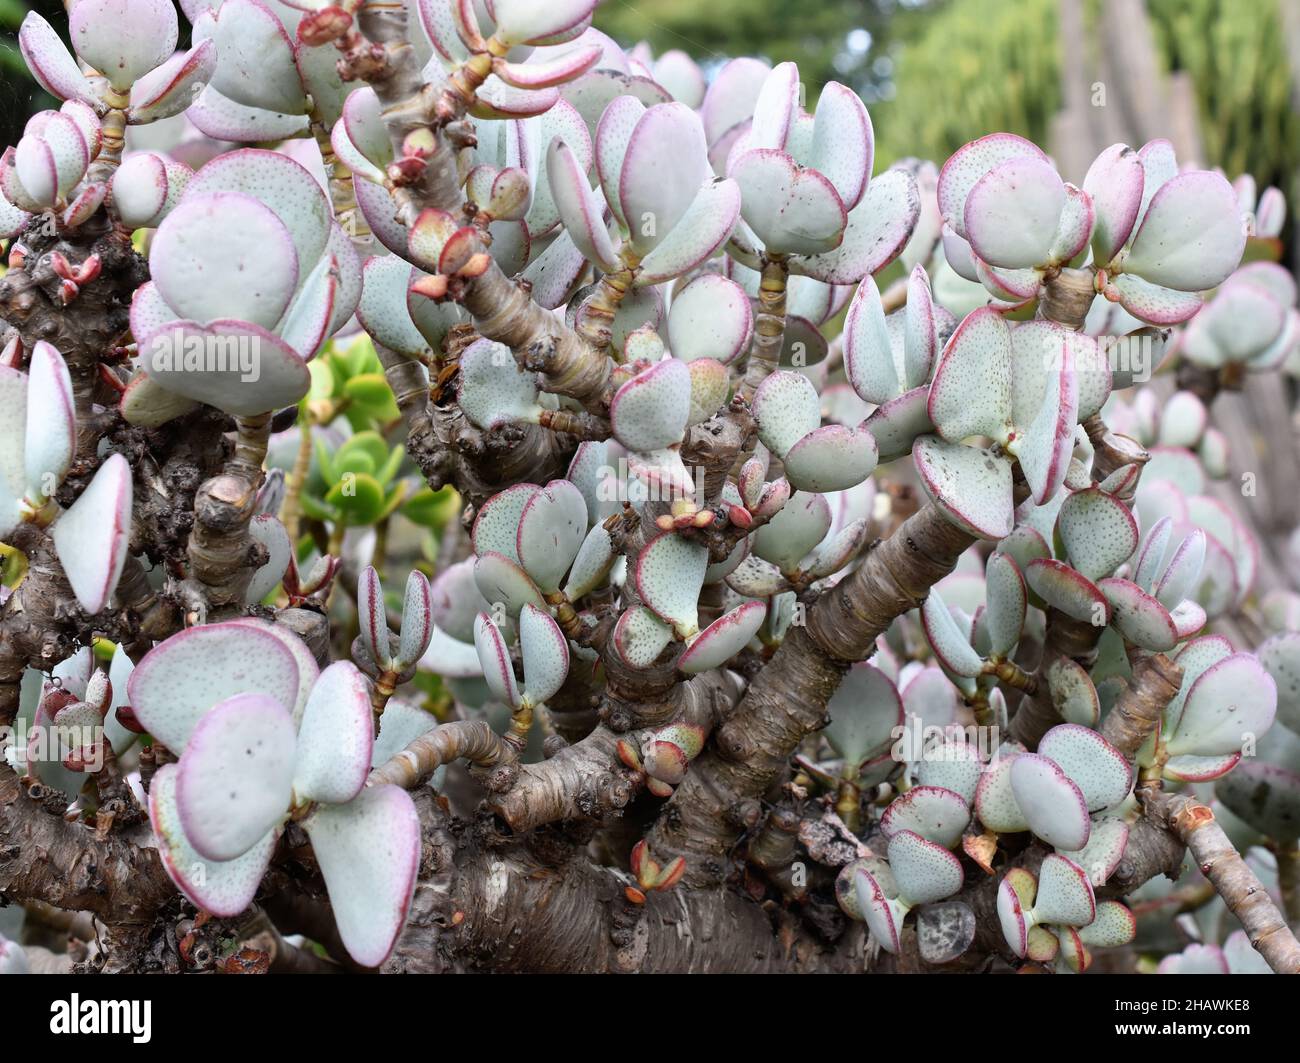 The silver jade plant Crassula arborescens foliage Stock Photo